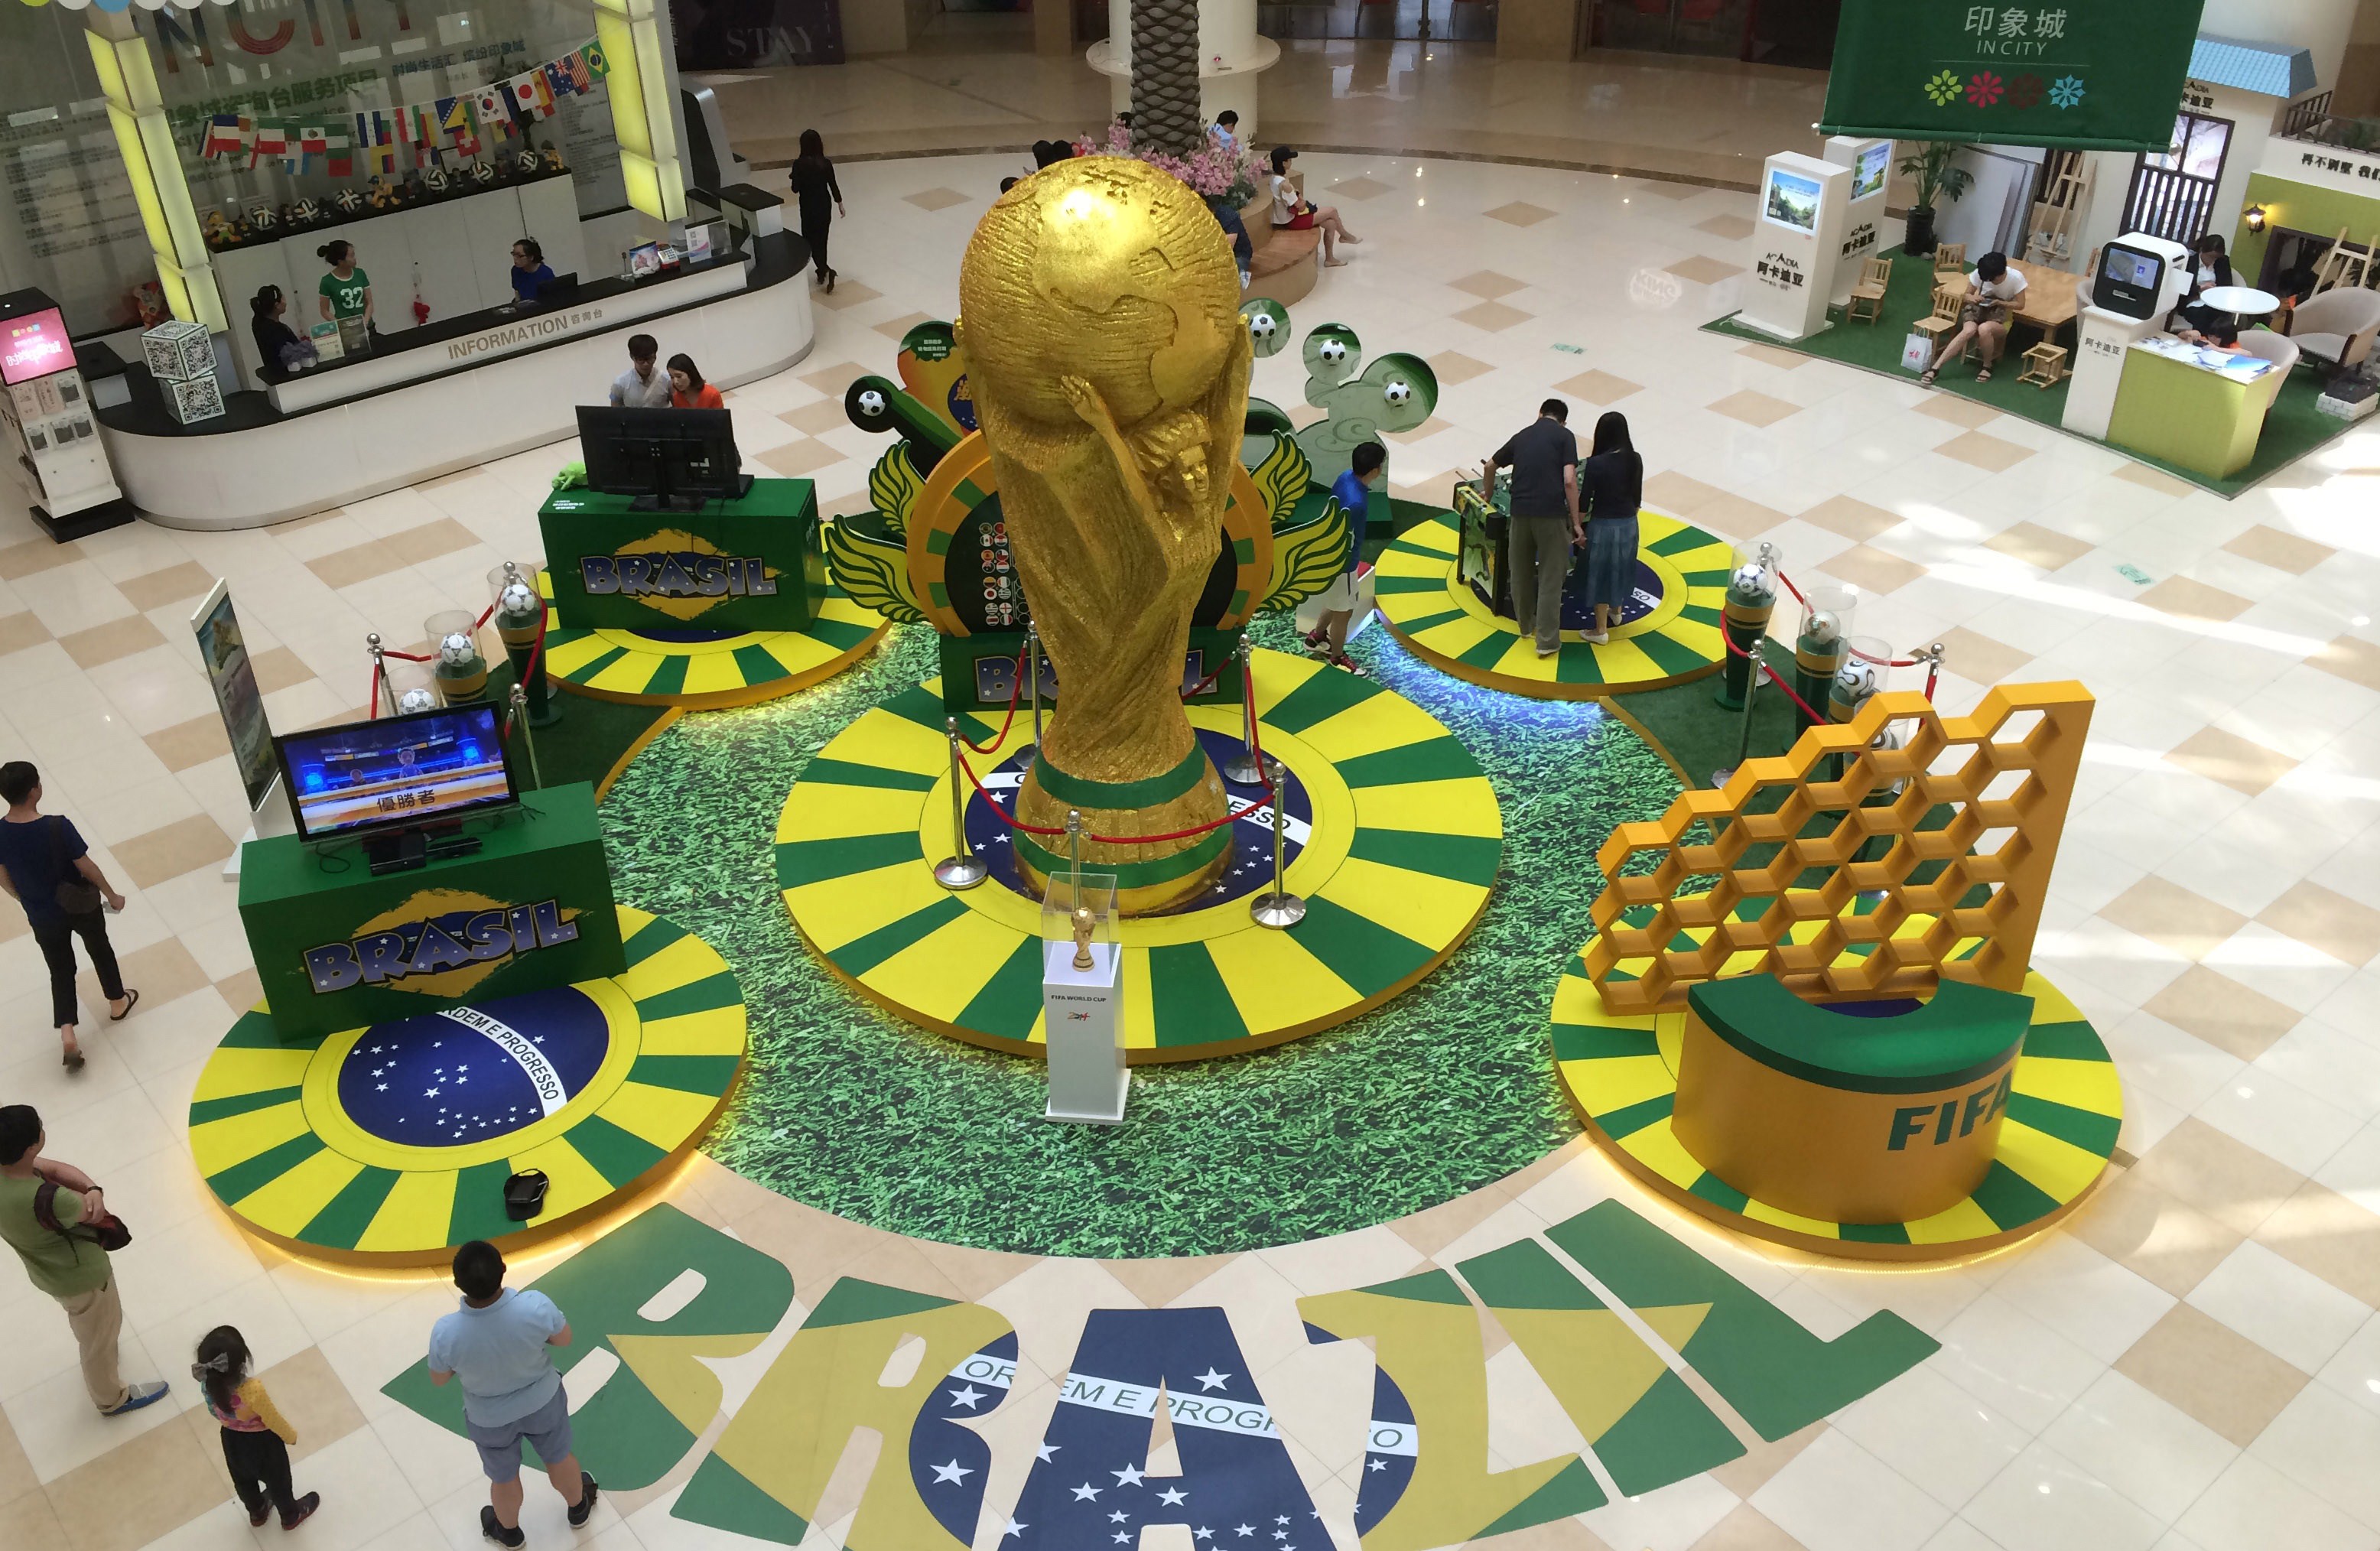 صور متفرقة من مونديال كأس العالم 2014 بالبرازيل